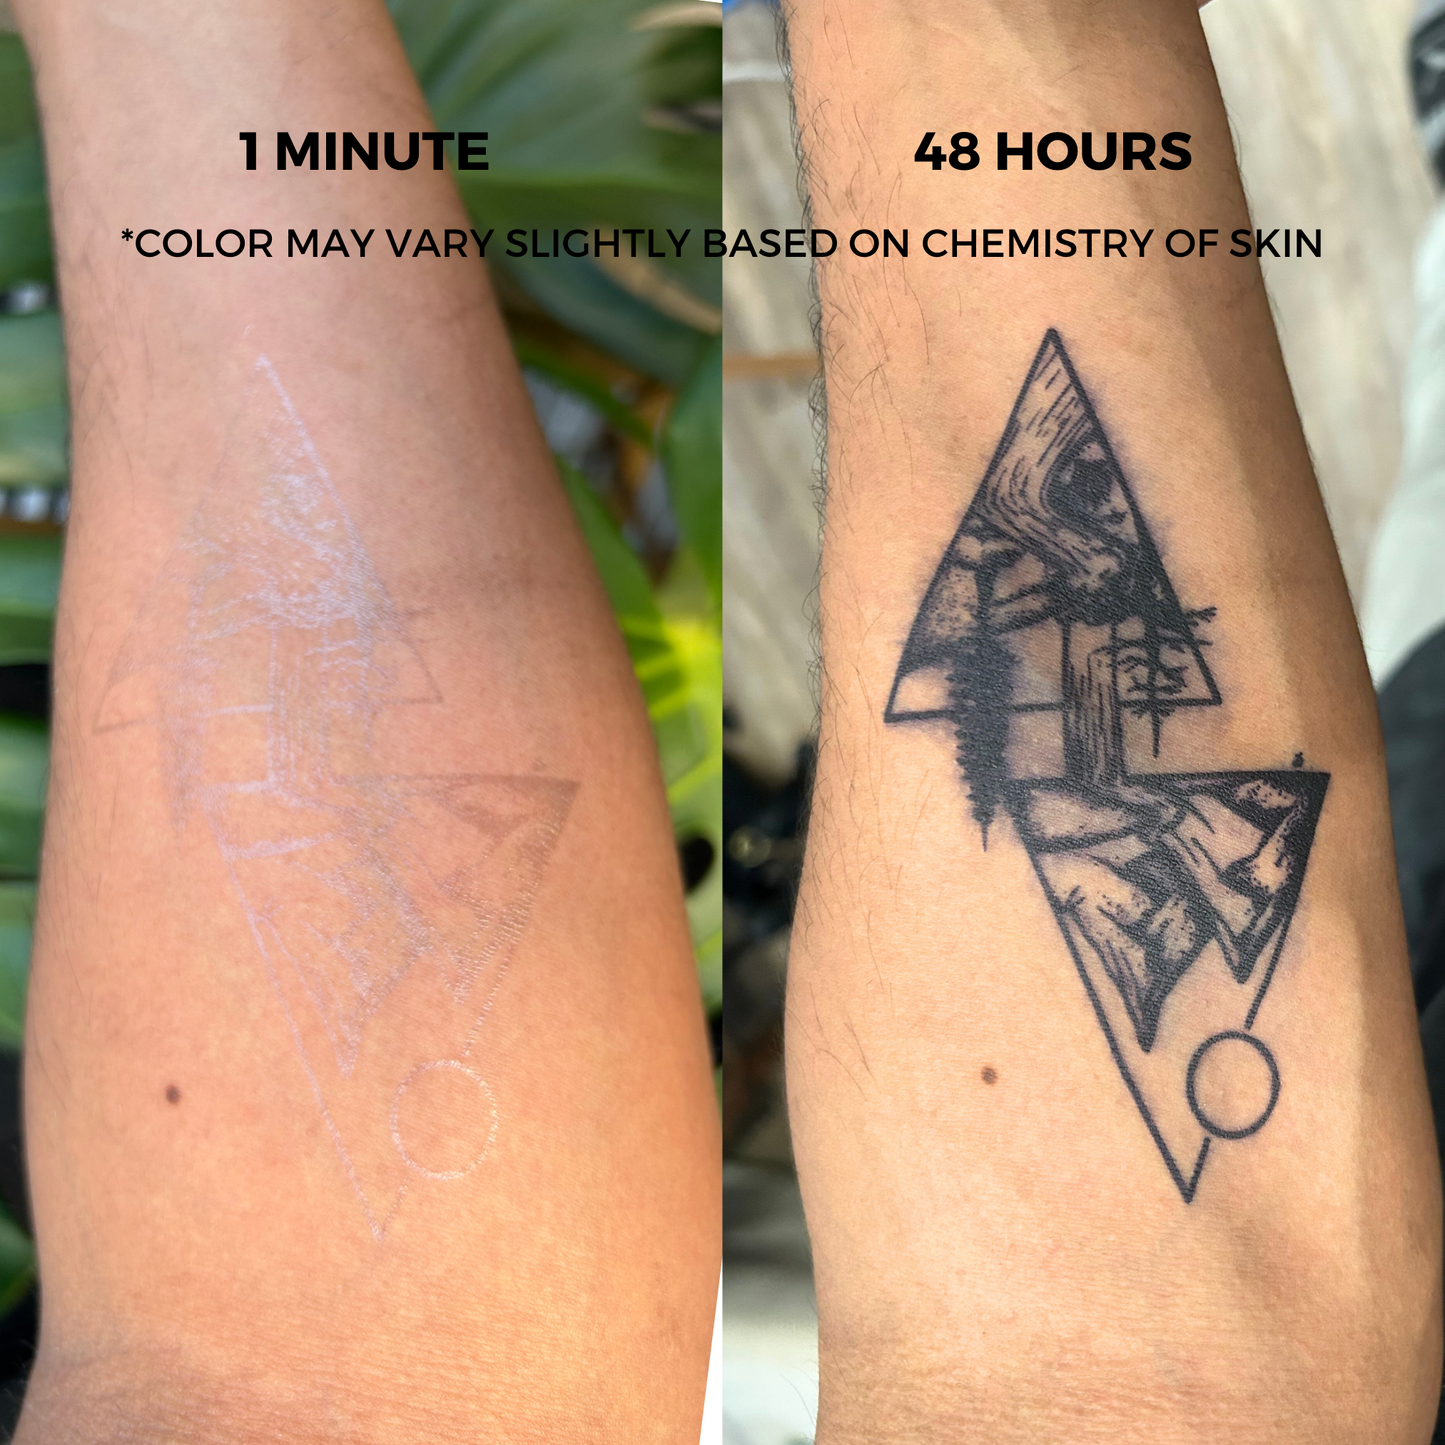 C'est La Vie Tattoo | 2 Week Temporary Tattoo | Semi Permanent Tattoo | Plant Based Vegan Tattoo | Letter Tattoo | Inspirational Tattoo | Festival Tattoo | Gift Idea | Boho Tattoo | Bohemian Tattoo